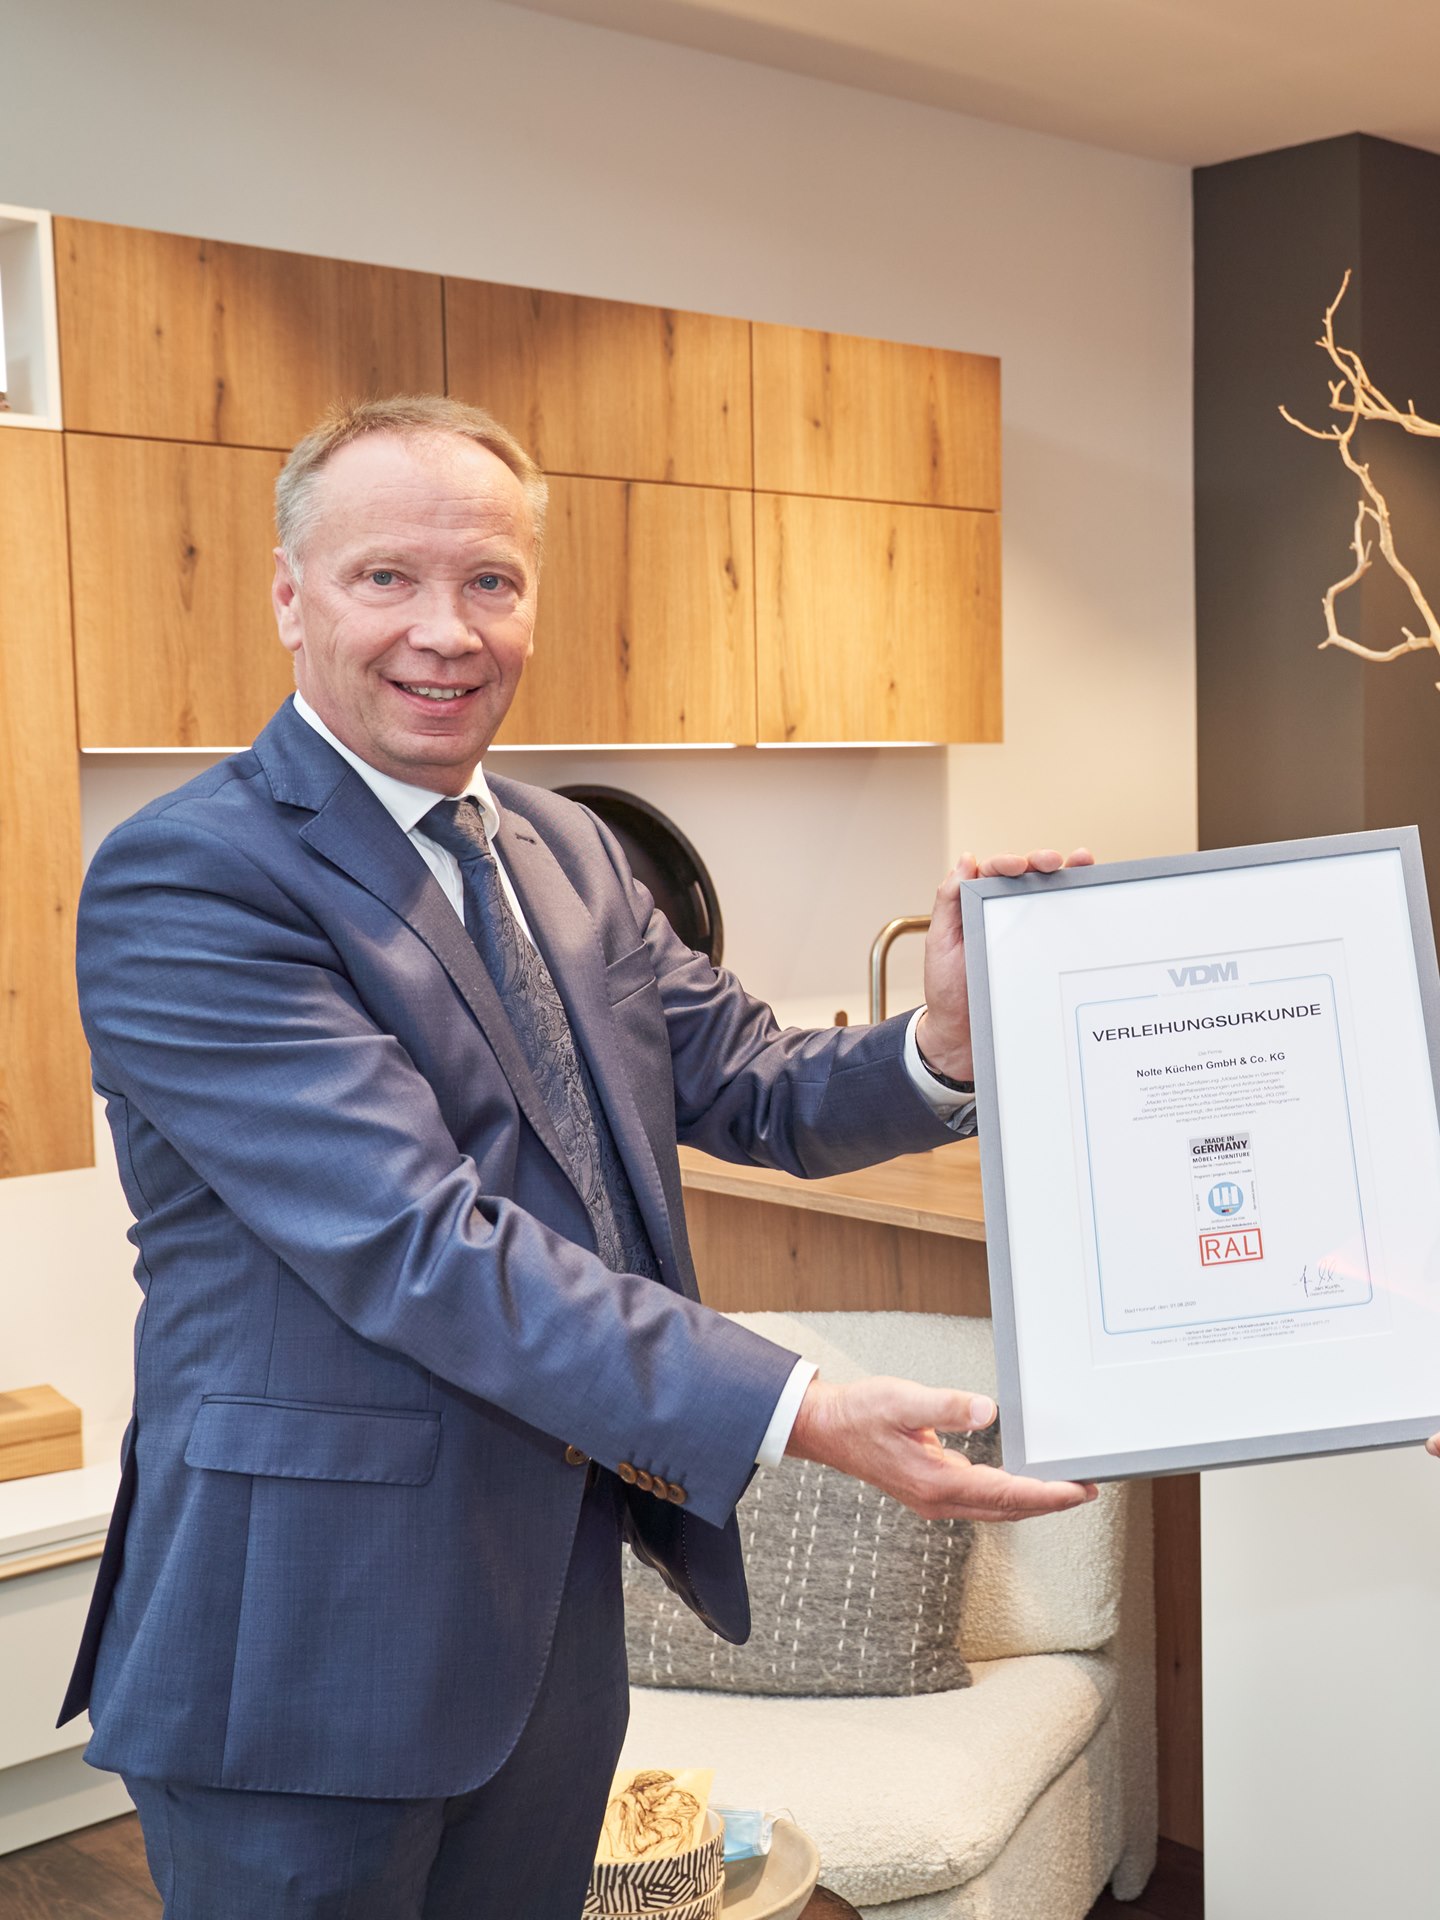 Dyrektor zarządzający VDM Jan Kurth przekazuje Eckardtowi Wefingowi certyfikat ze znakiem jakości „Made in Germany”.